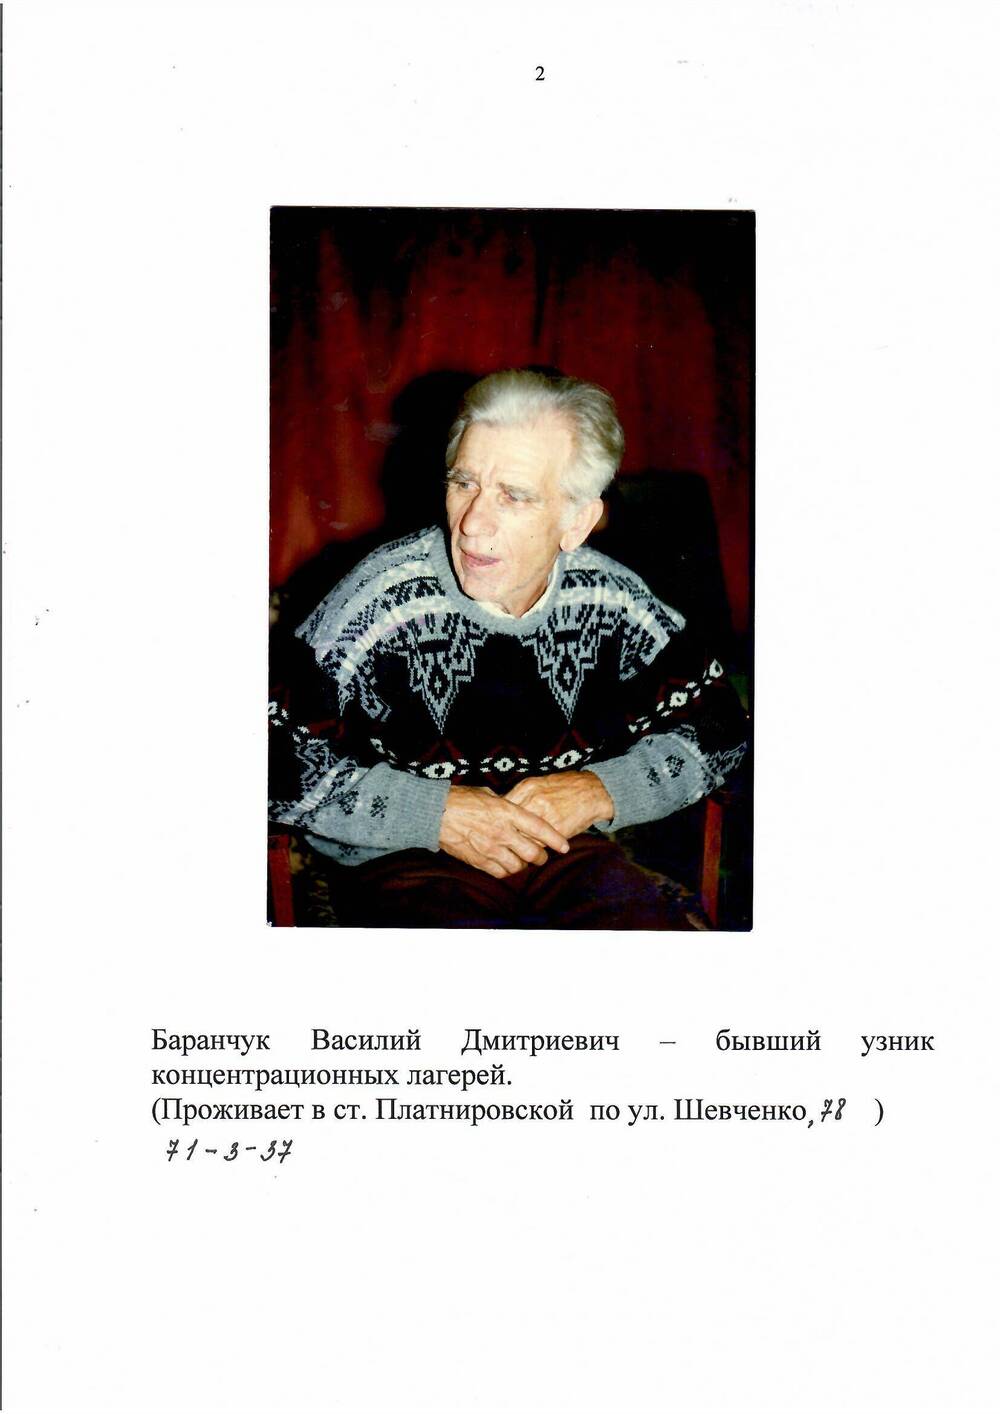 Фото цветное.Баранчук Василий Дмитриевич- бывший узник концентрационных лагерей.